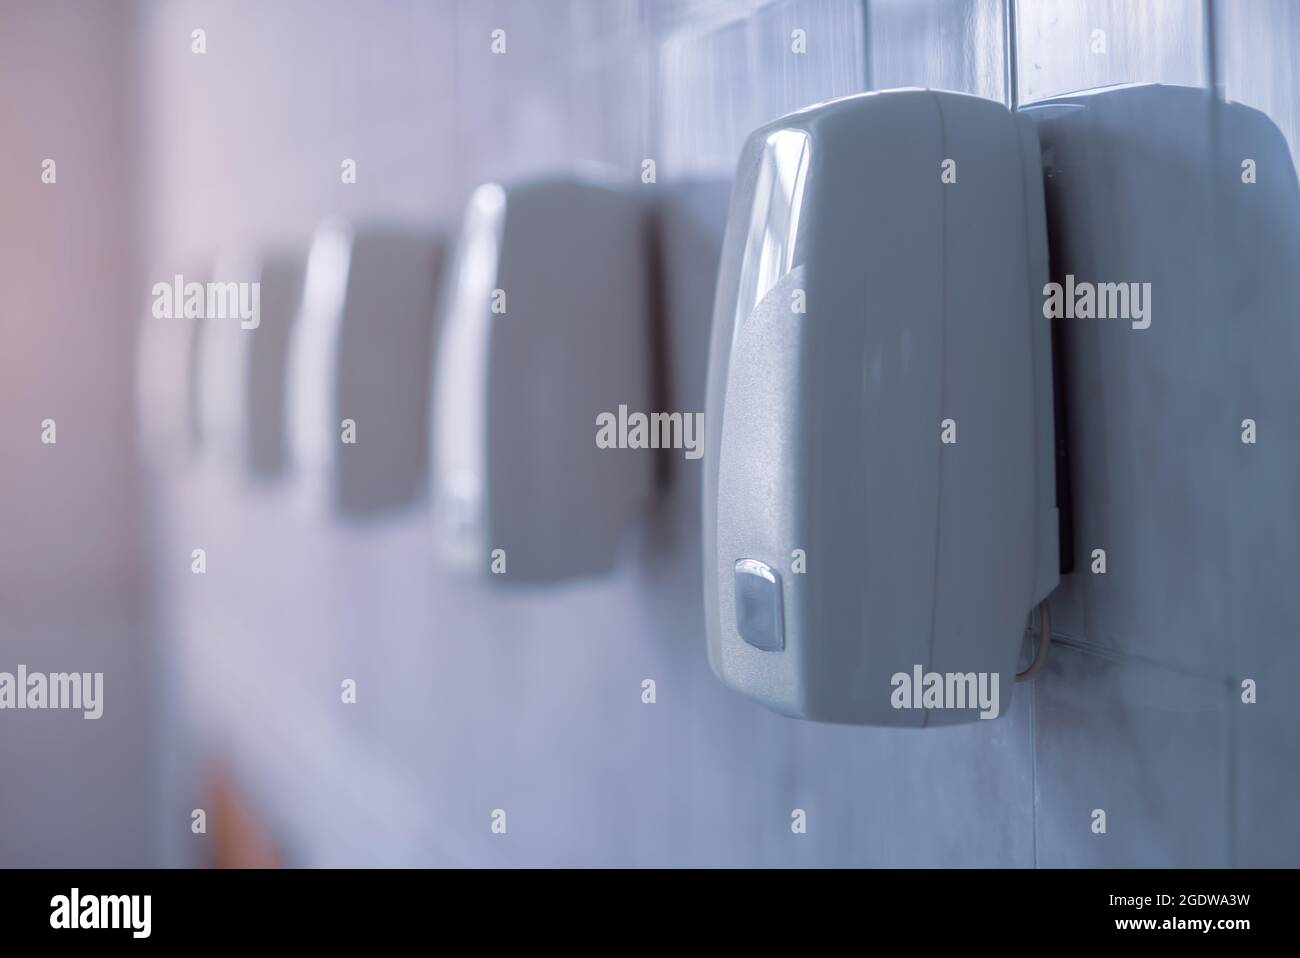 Asciuga mano. Una fila di essiccatori automatici è appesa a una parete. Foto Stock